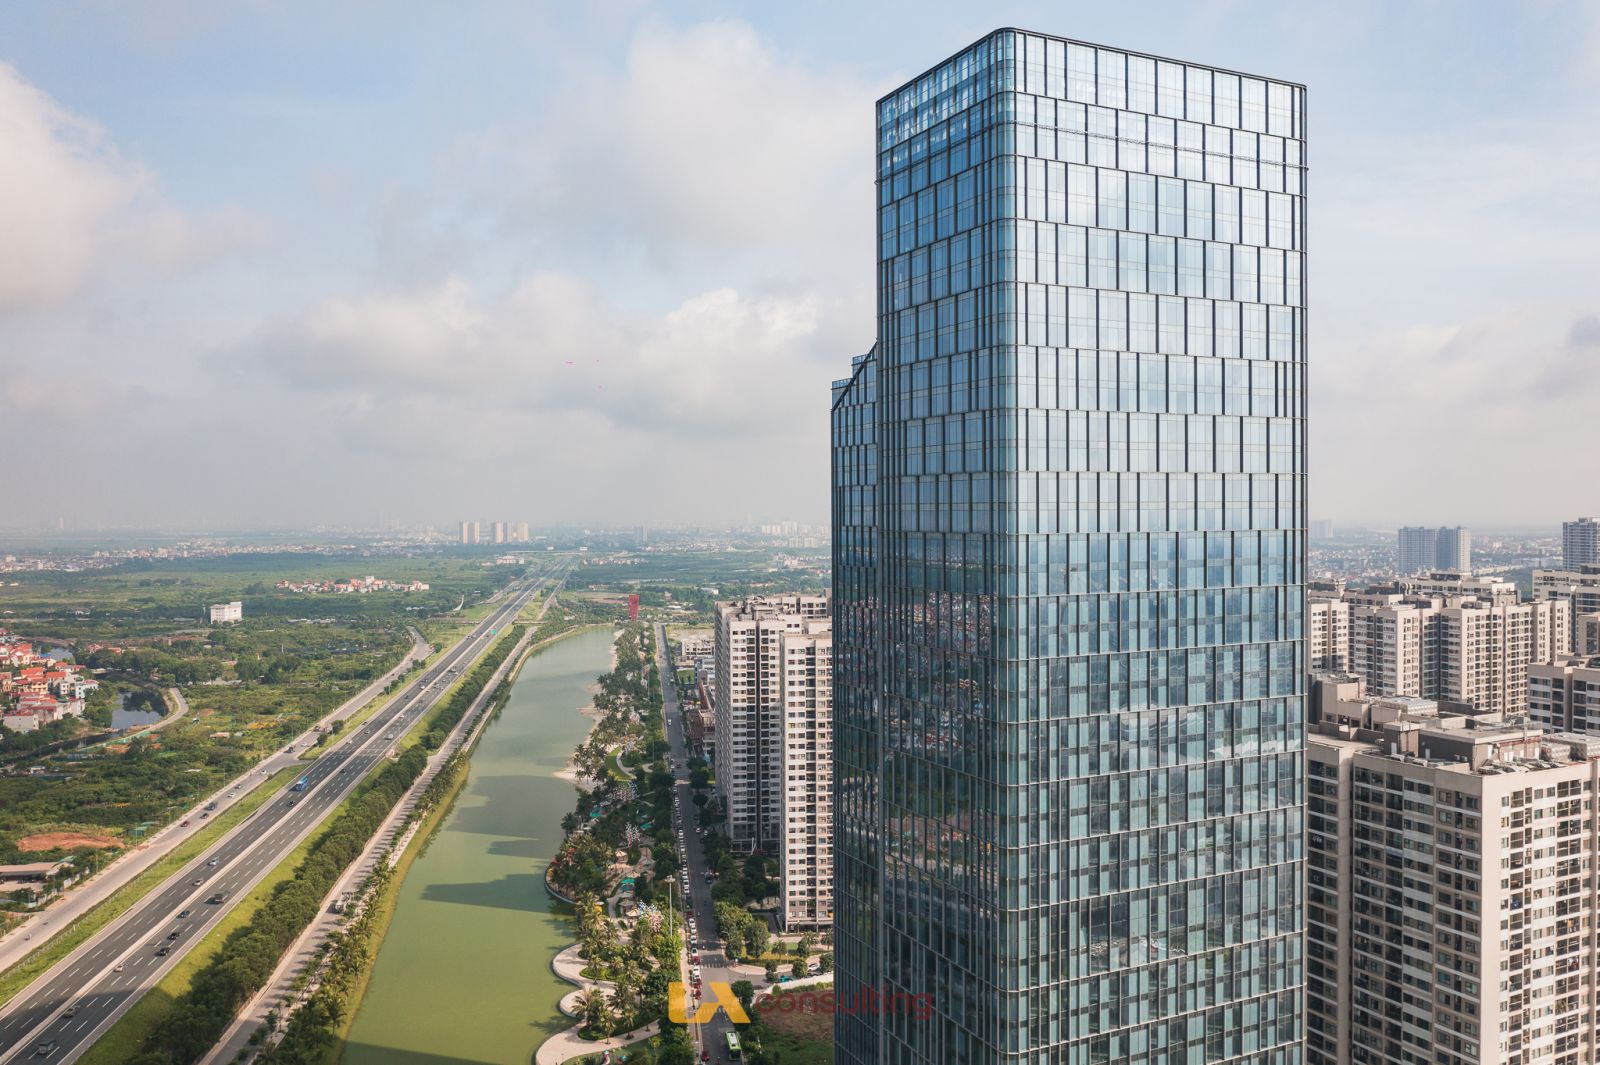 án đạt chứng nhận LEED Platinum, trong đó có 1 dự án duy nhất tại Hà Nội là tòa tháp văn phòng TechnoPark Tower. 